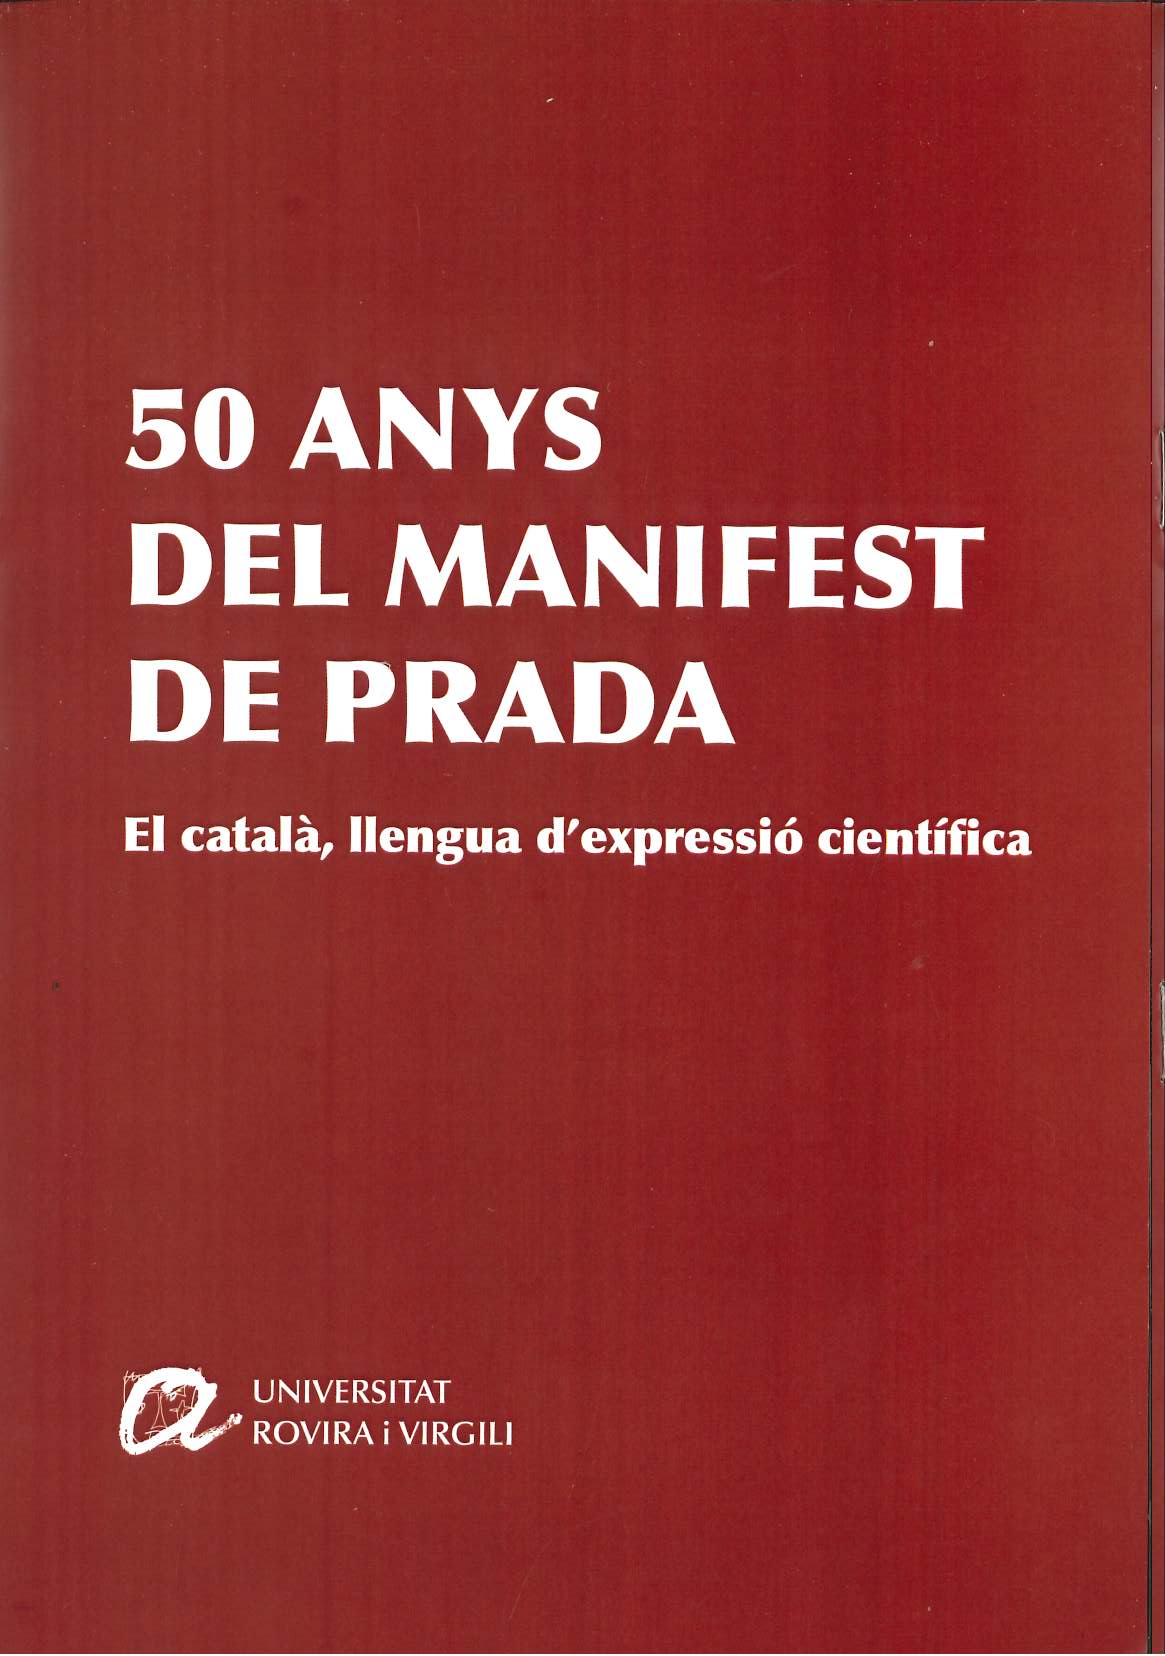 Imagen de portada del libro 50 anys del manifest de Prada